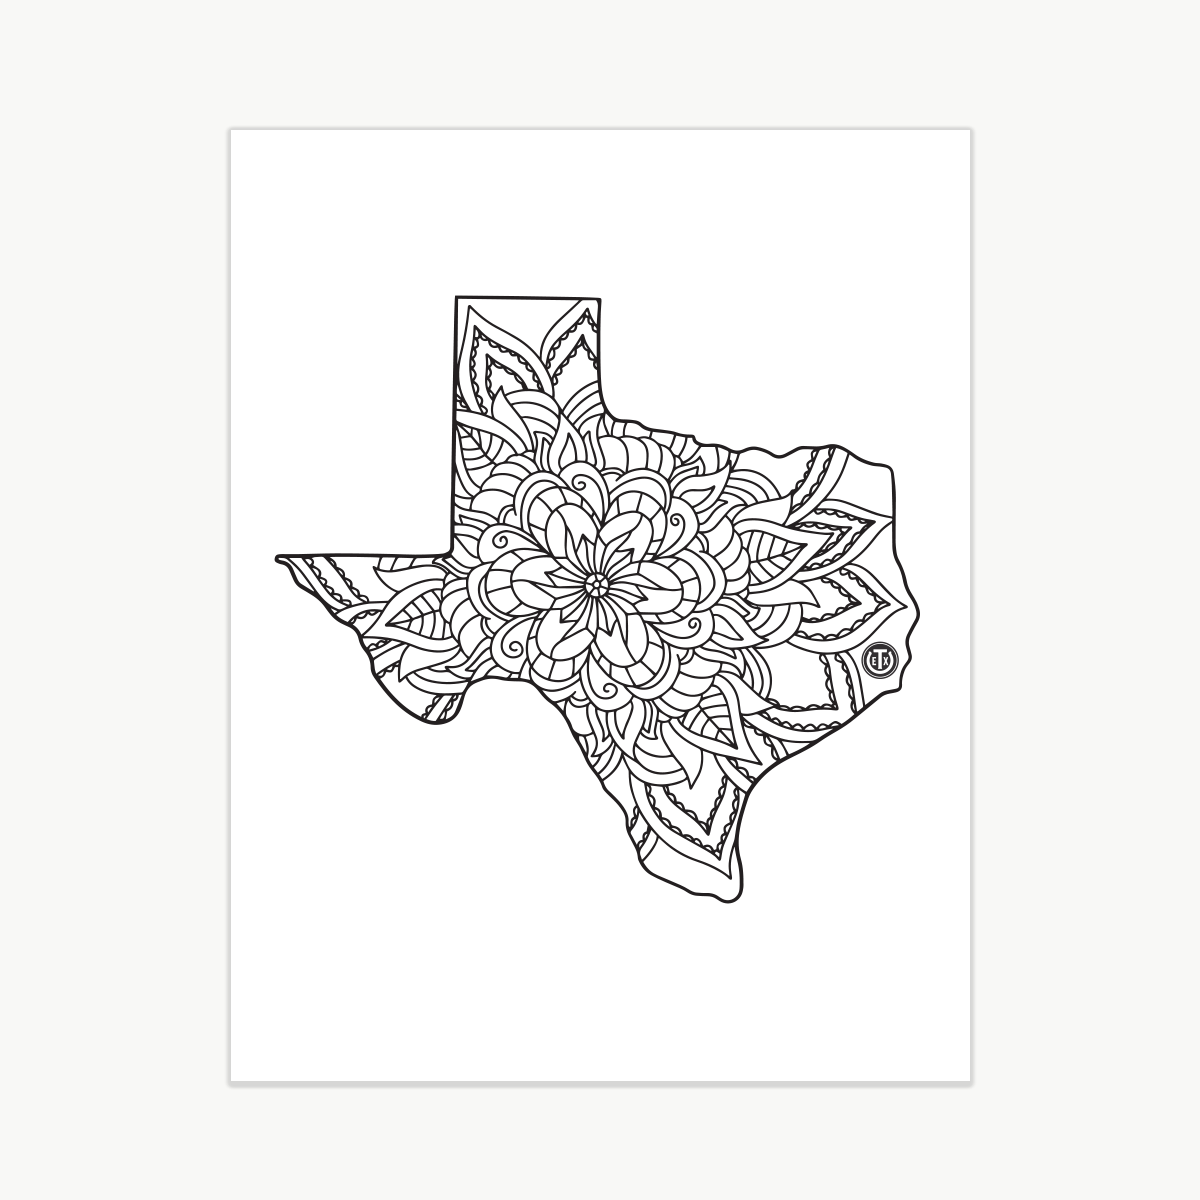 Coloring Pages - Mandala Texas